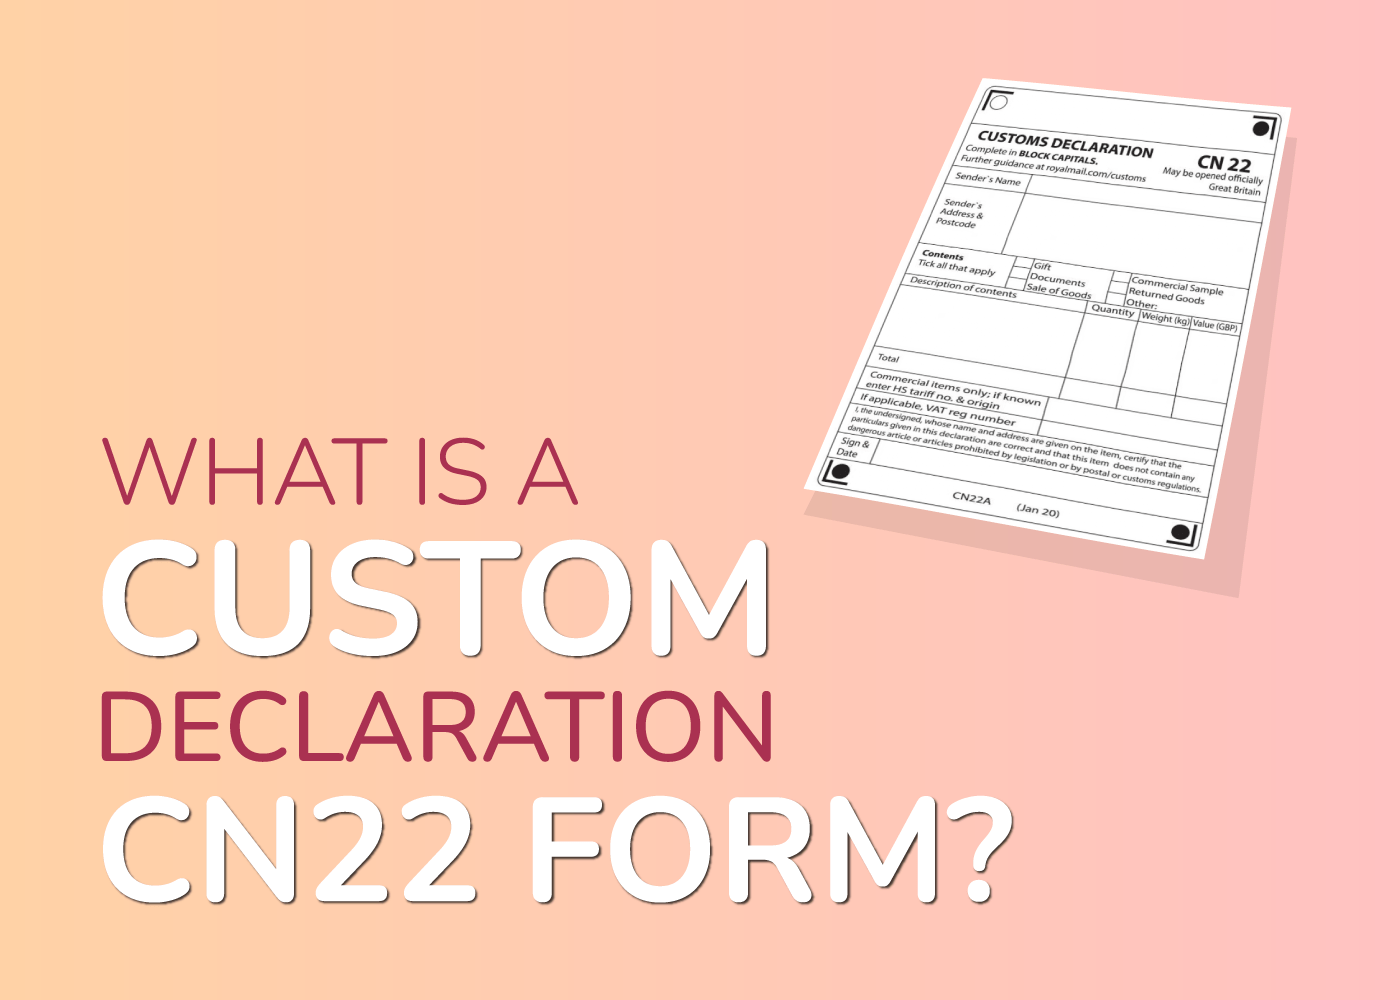 cn22 customs declaration Form